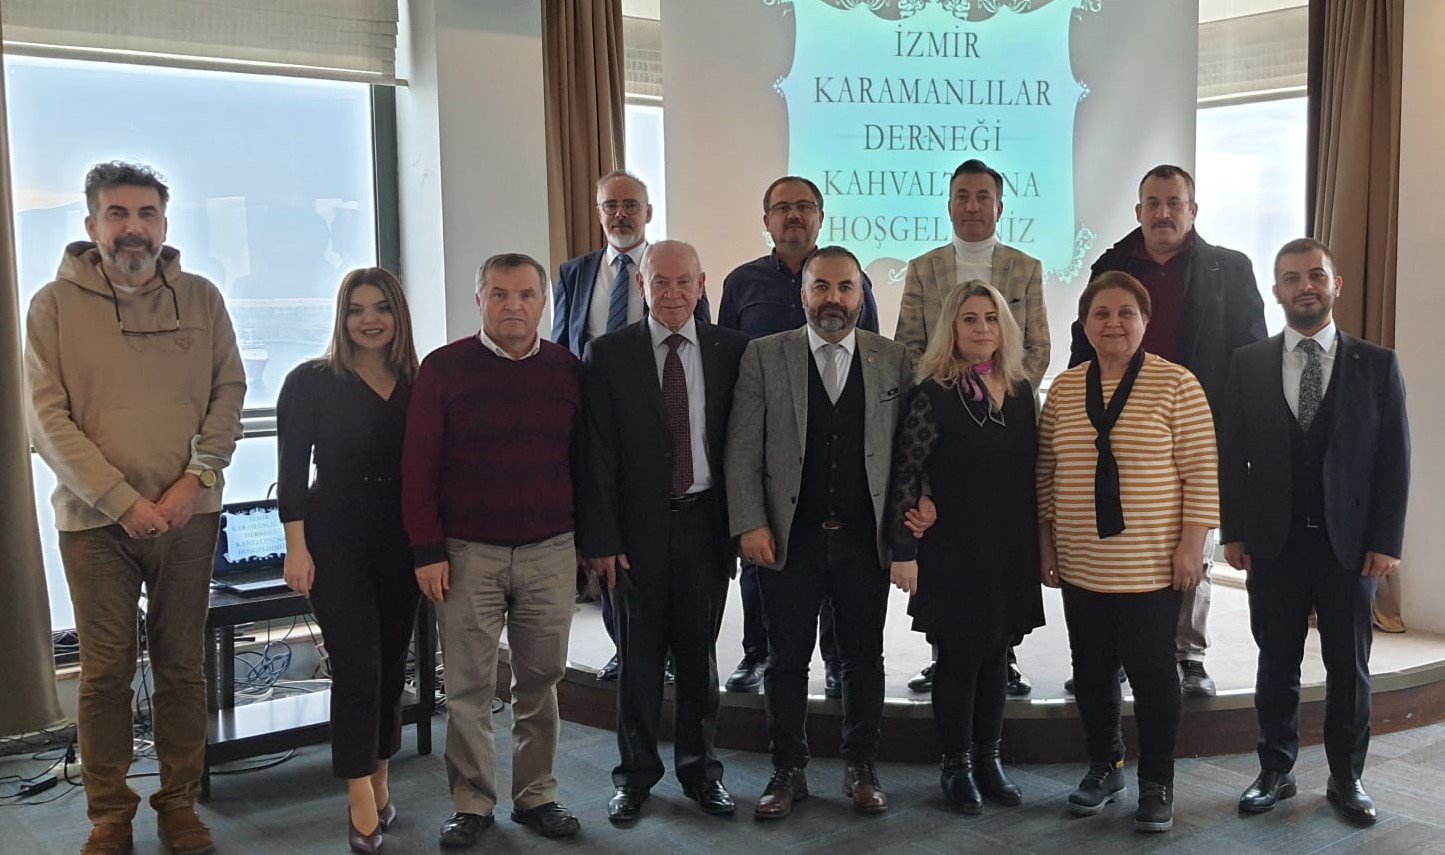 İzmir Karamanlılar Derneği yeni yönetimi seçildi